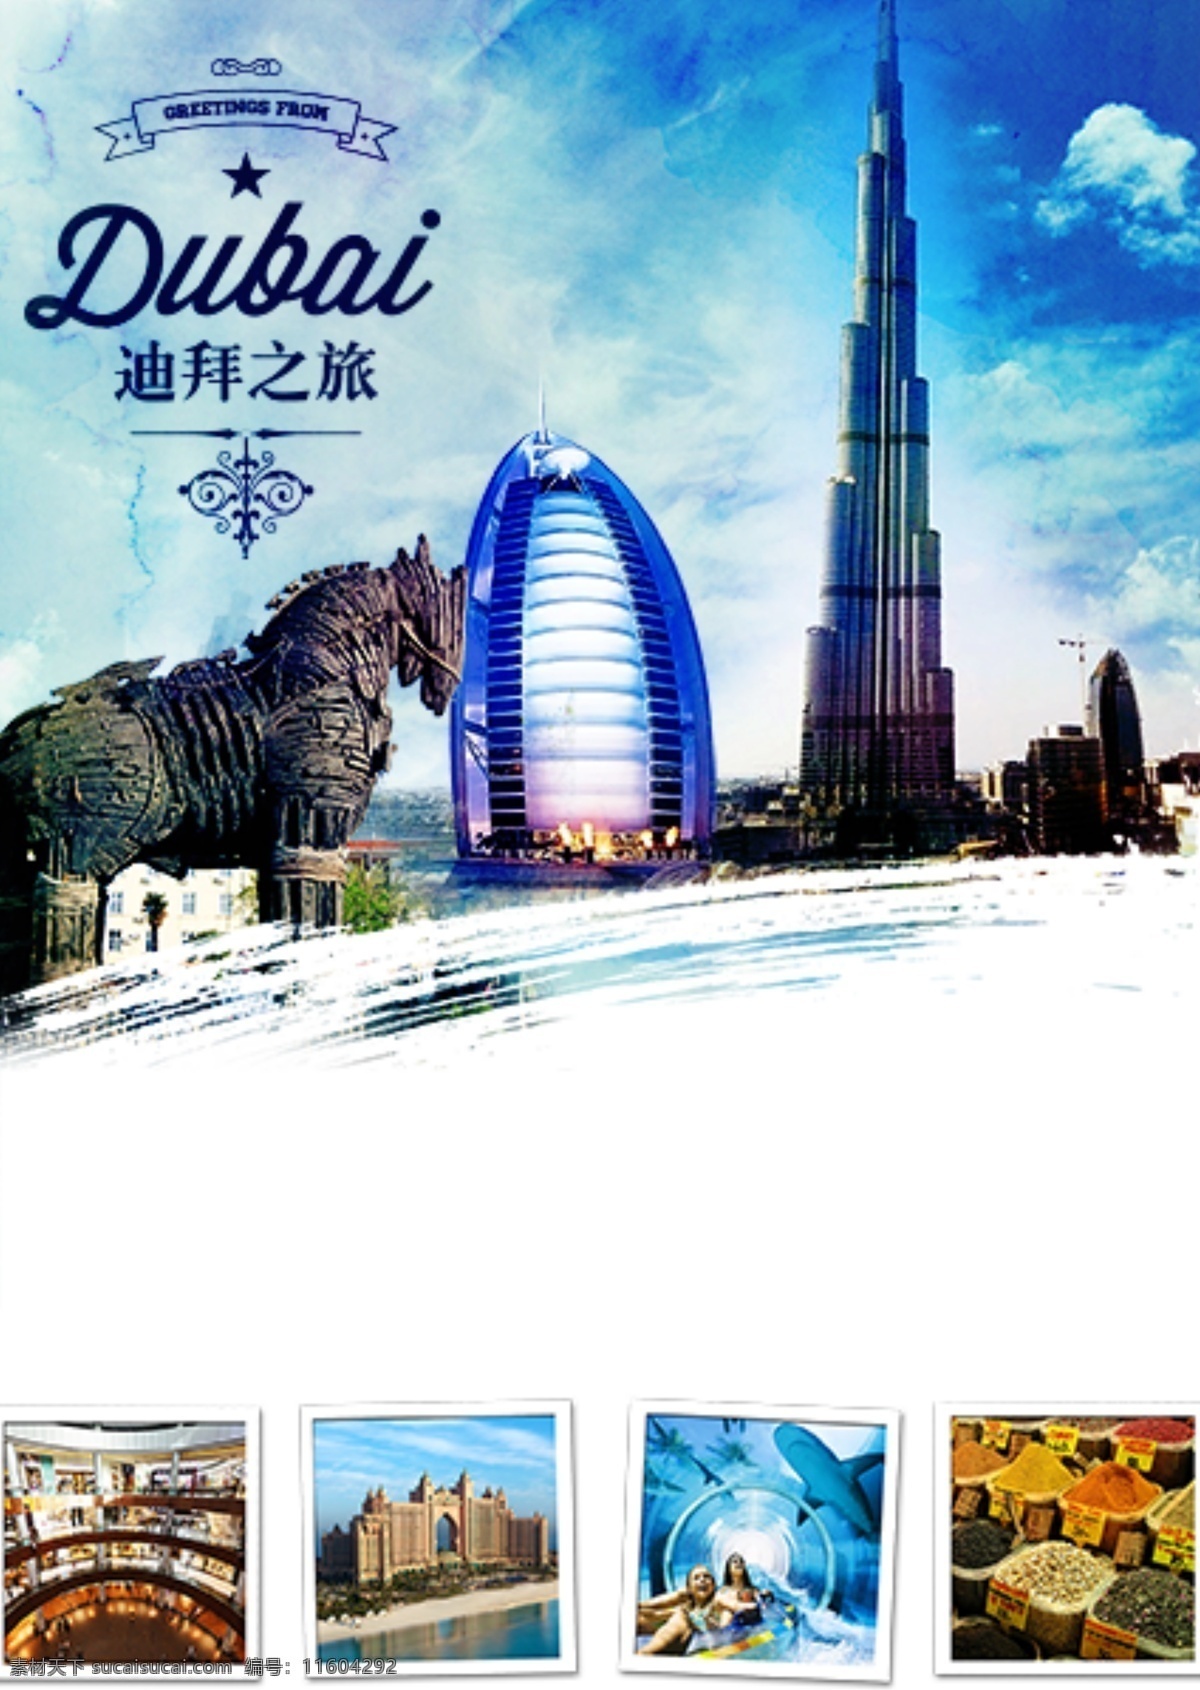 迪拜旅游海报 迪拜 旅游 中东 海报 旅游海报 白色